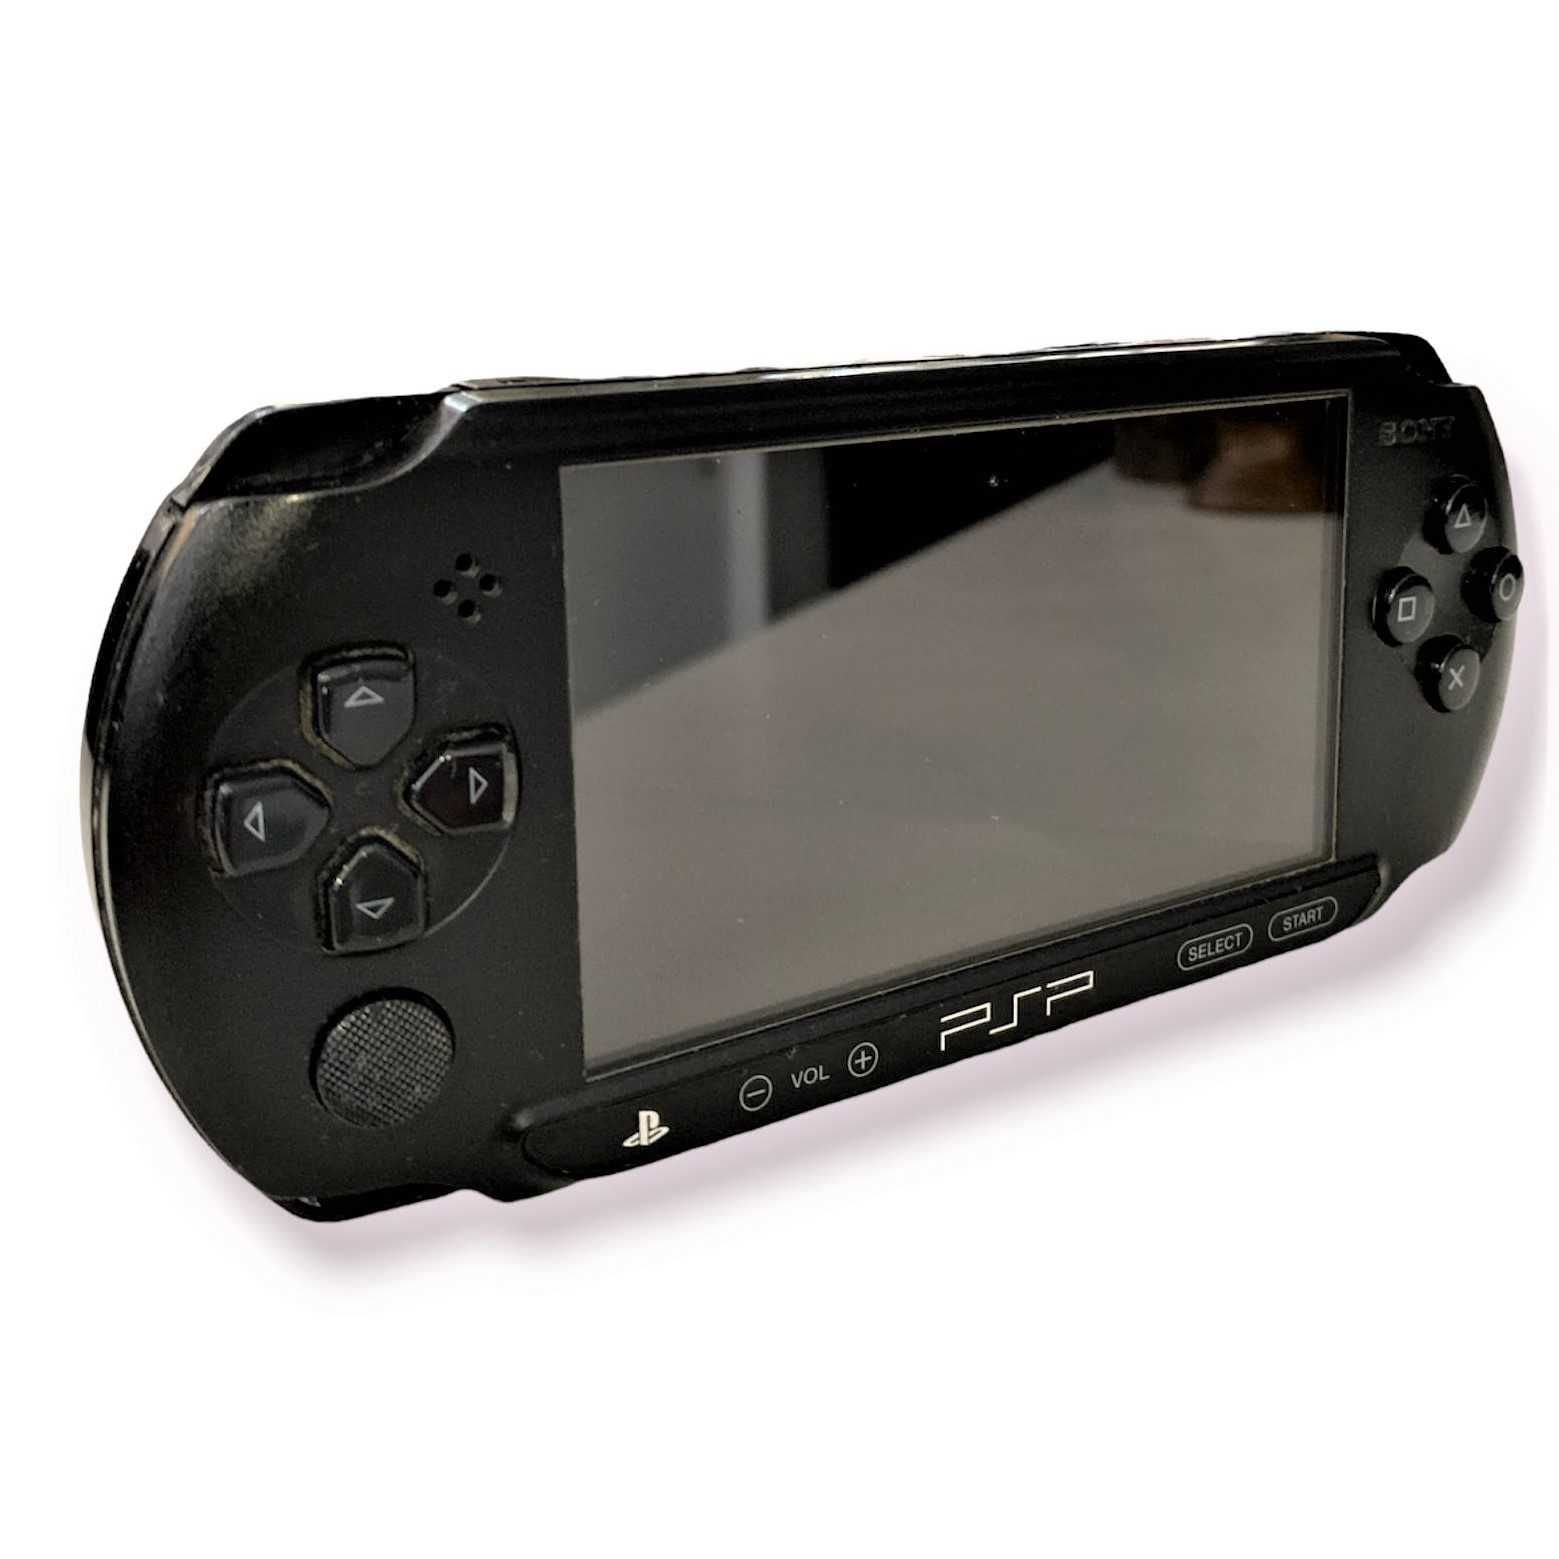 Consola Sony PS2 E 1004 c/Carregador